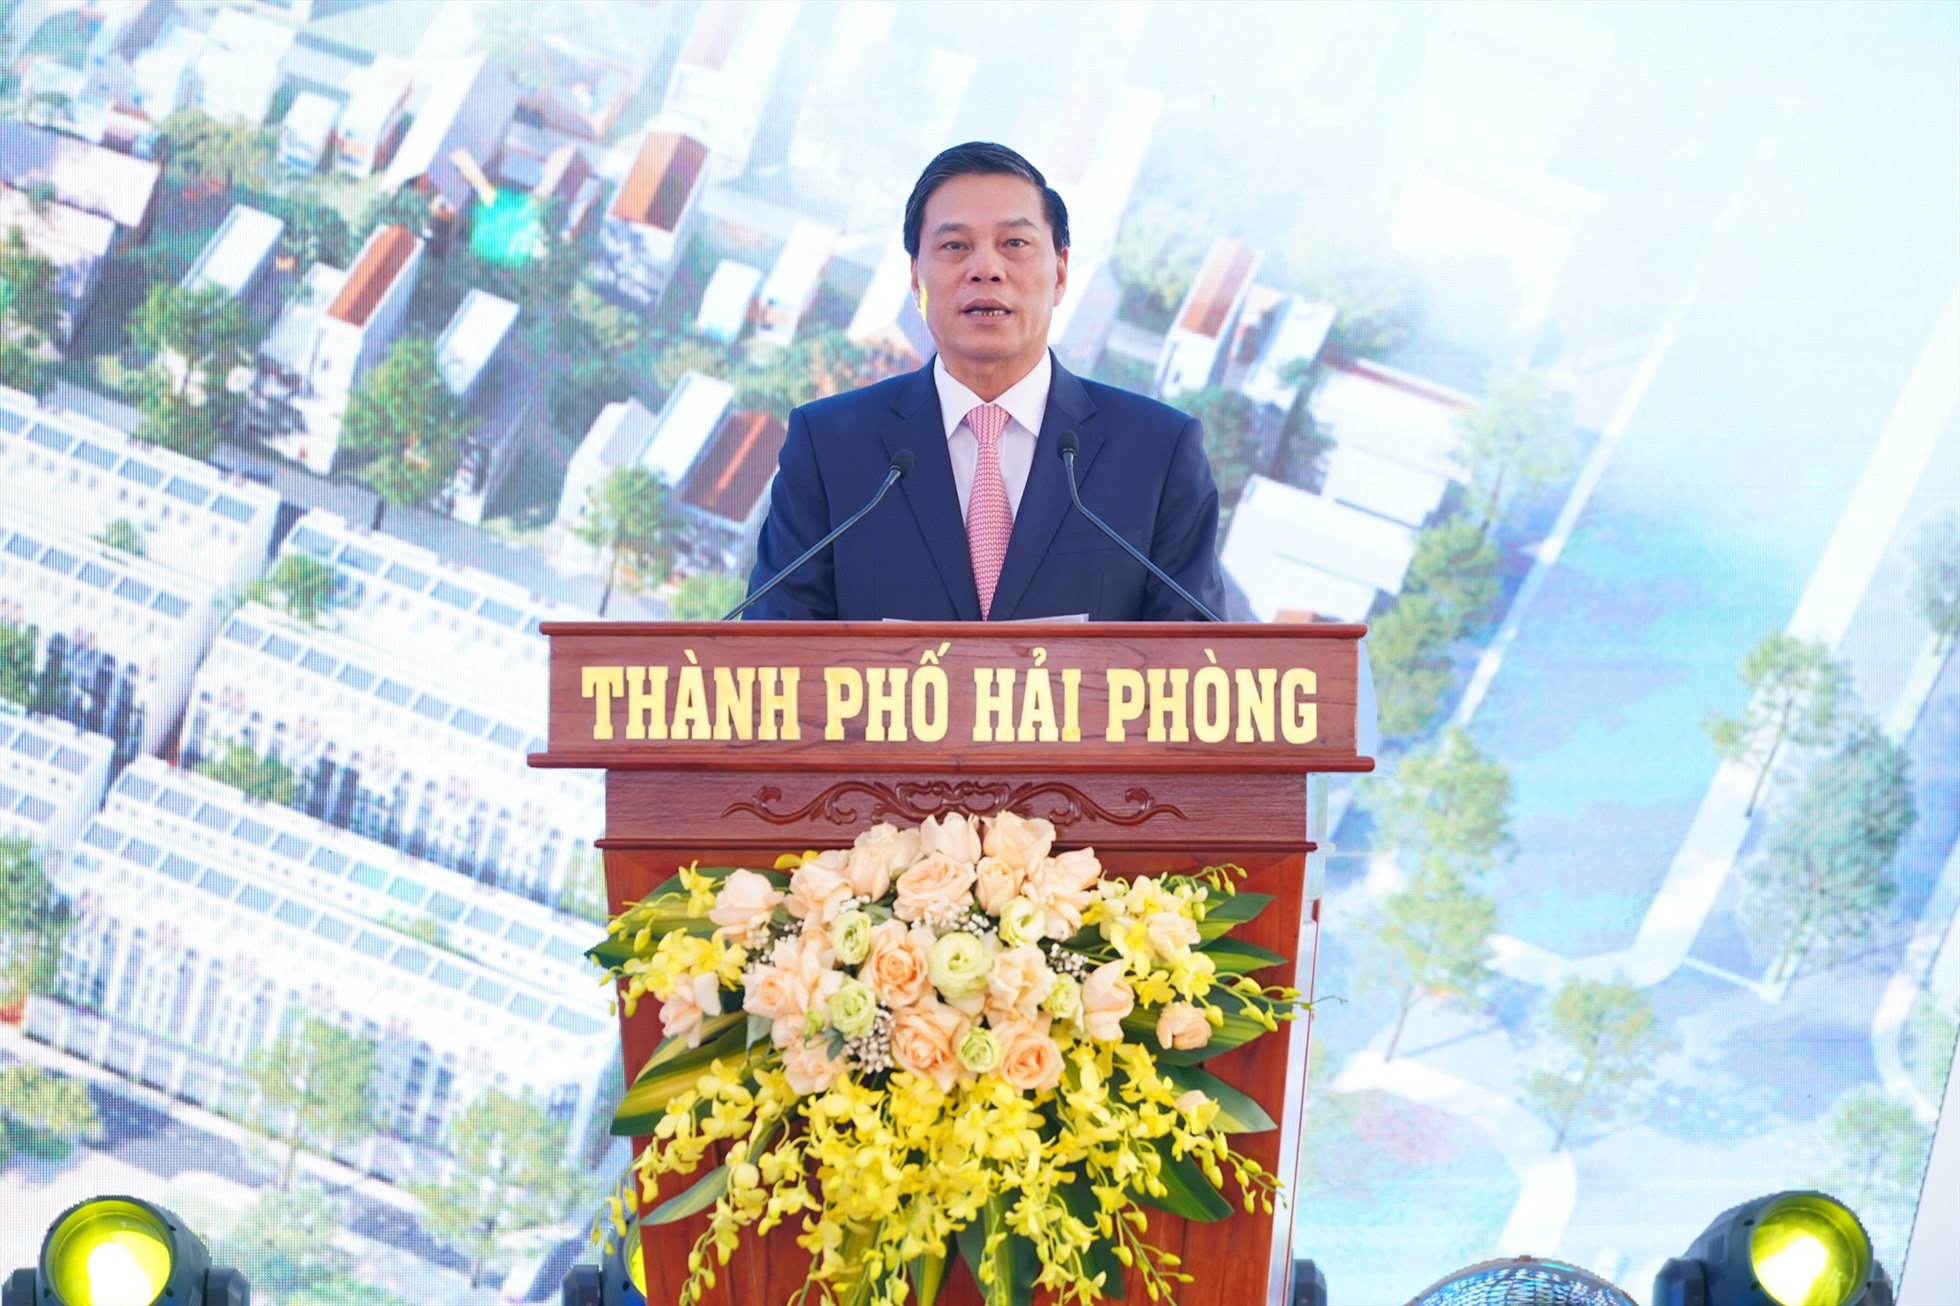 Chủ tịch UBND TP Hải Phòng Nguyễn Văn Tùng phát biểu tại lễ khởi công xây dựng khu nhà ở xã hội tại Kho 3 Lạc Viên, quận Ngô Quyền. Ảnh: